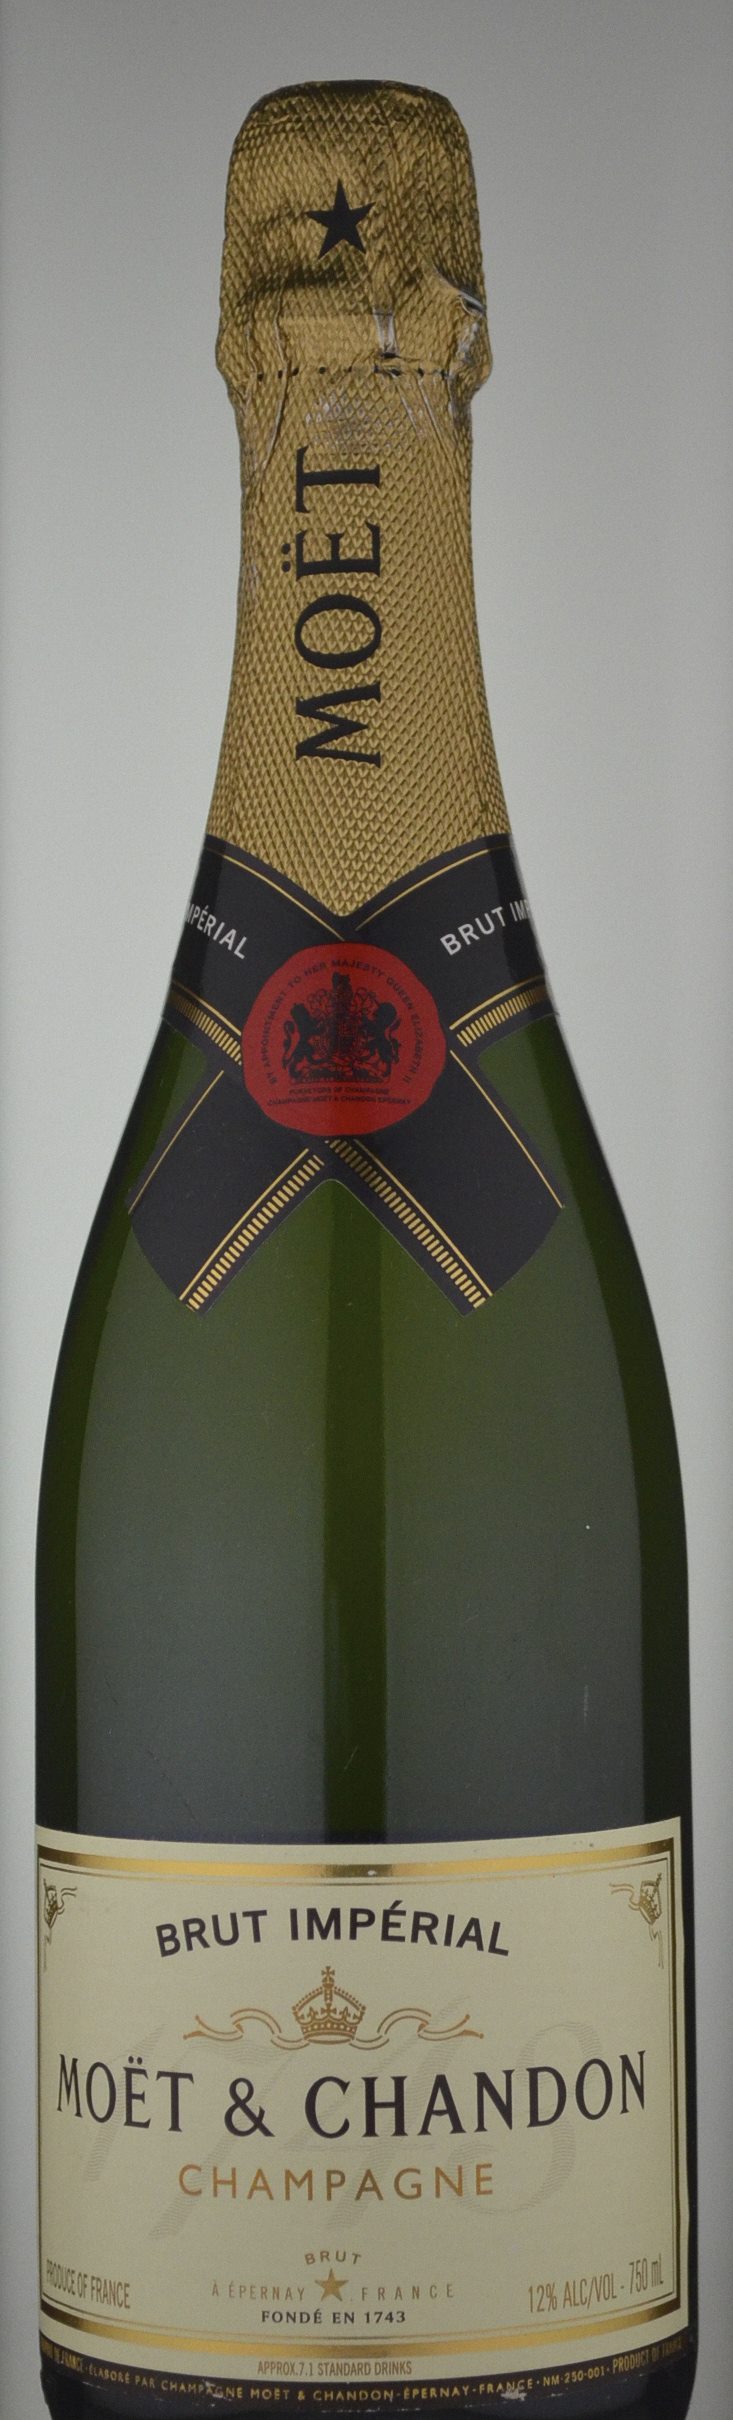 Moet & Chandon Brut Imperial Champagne N/V